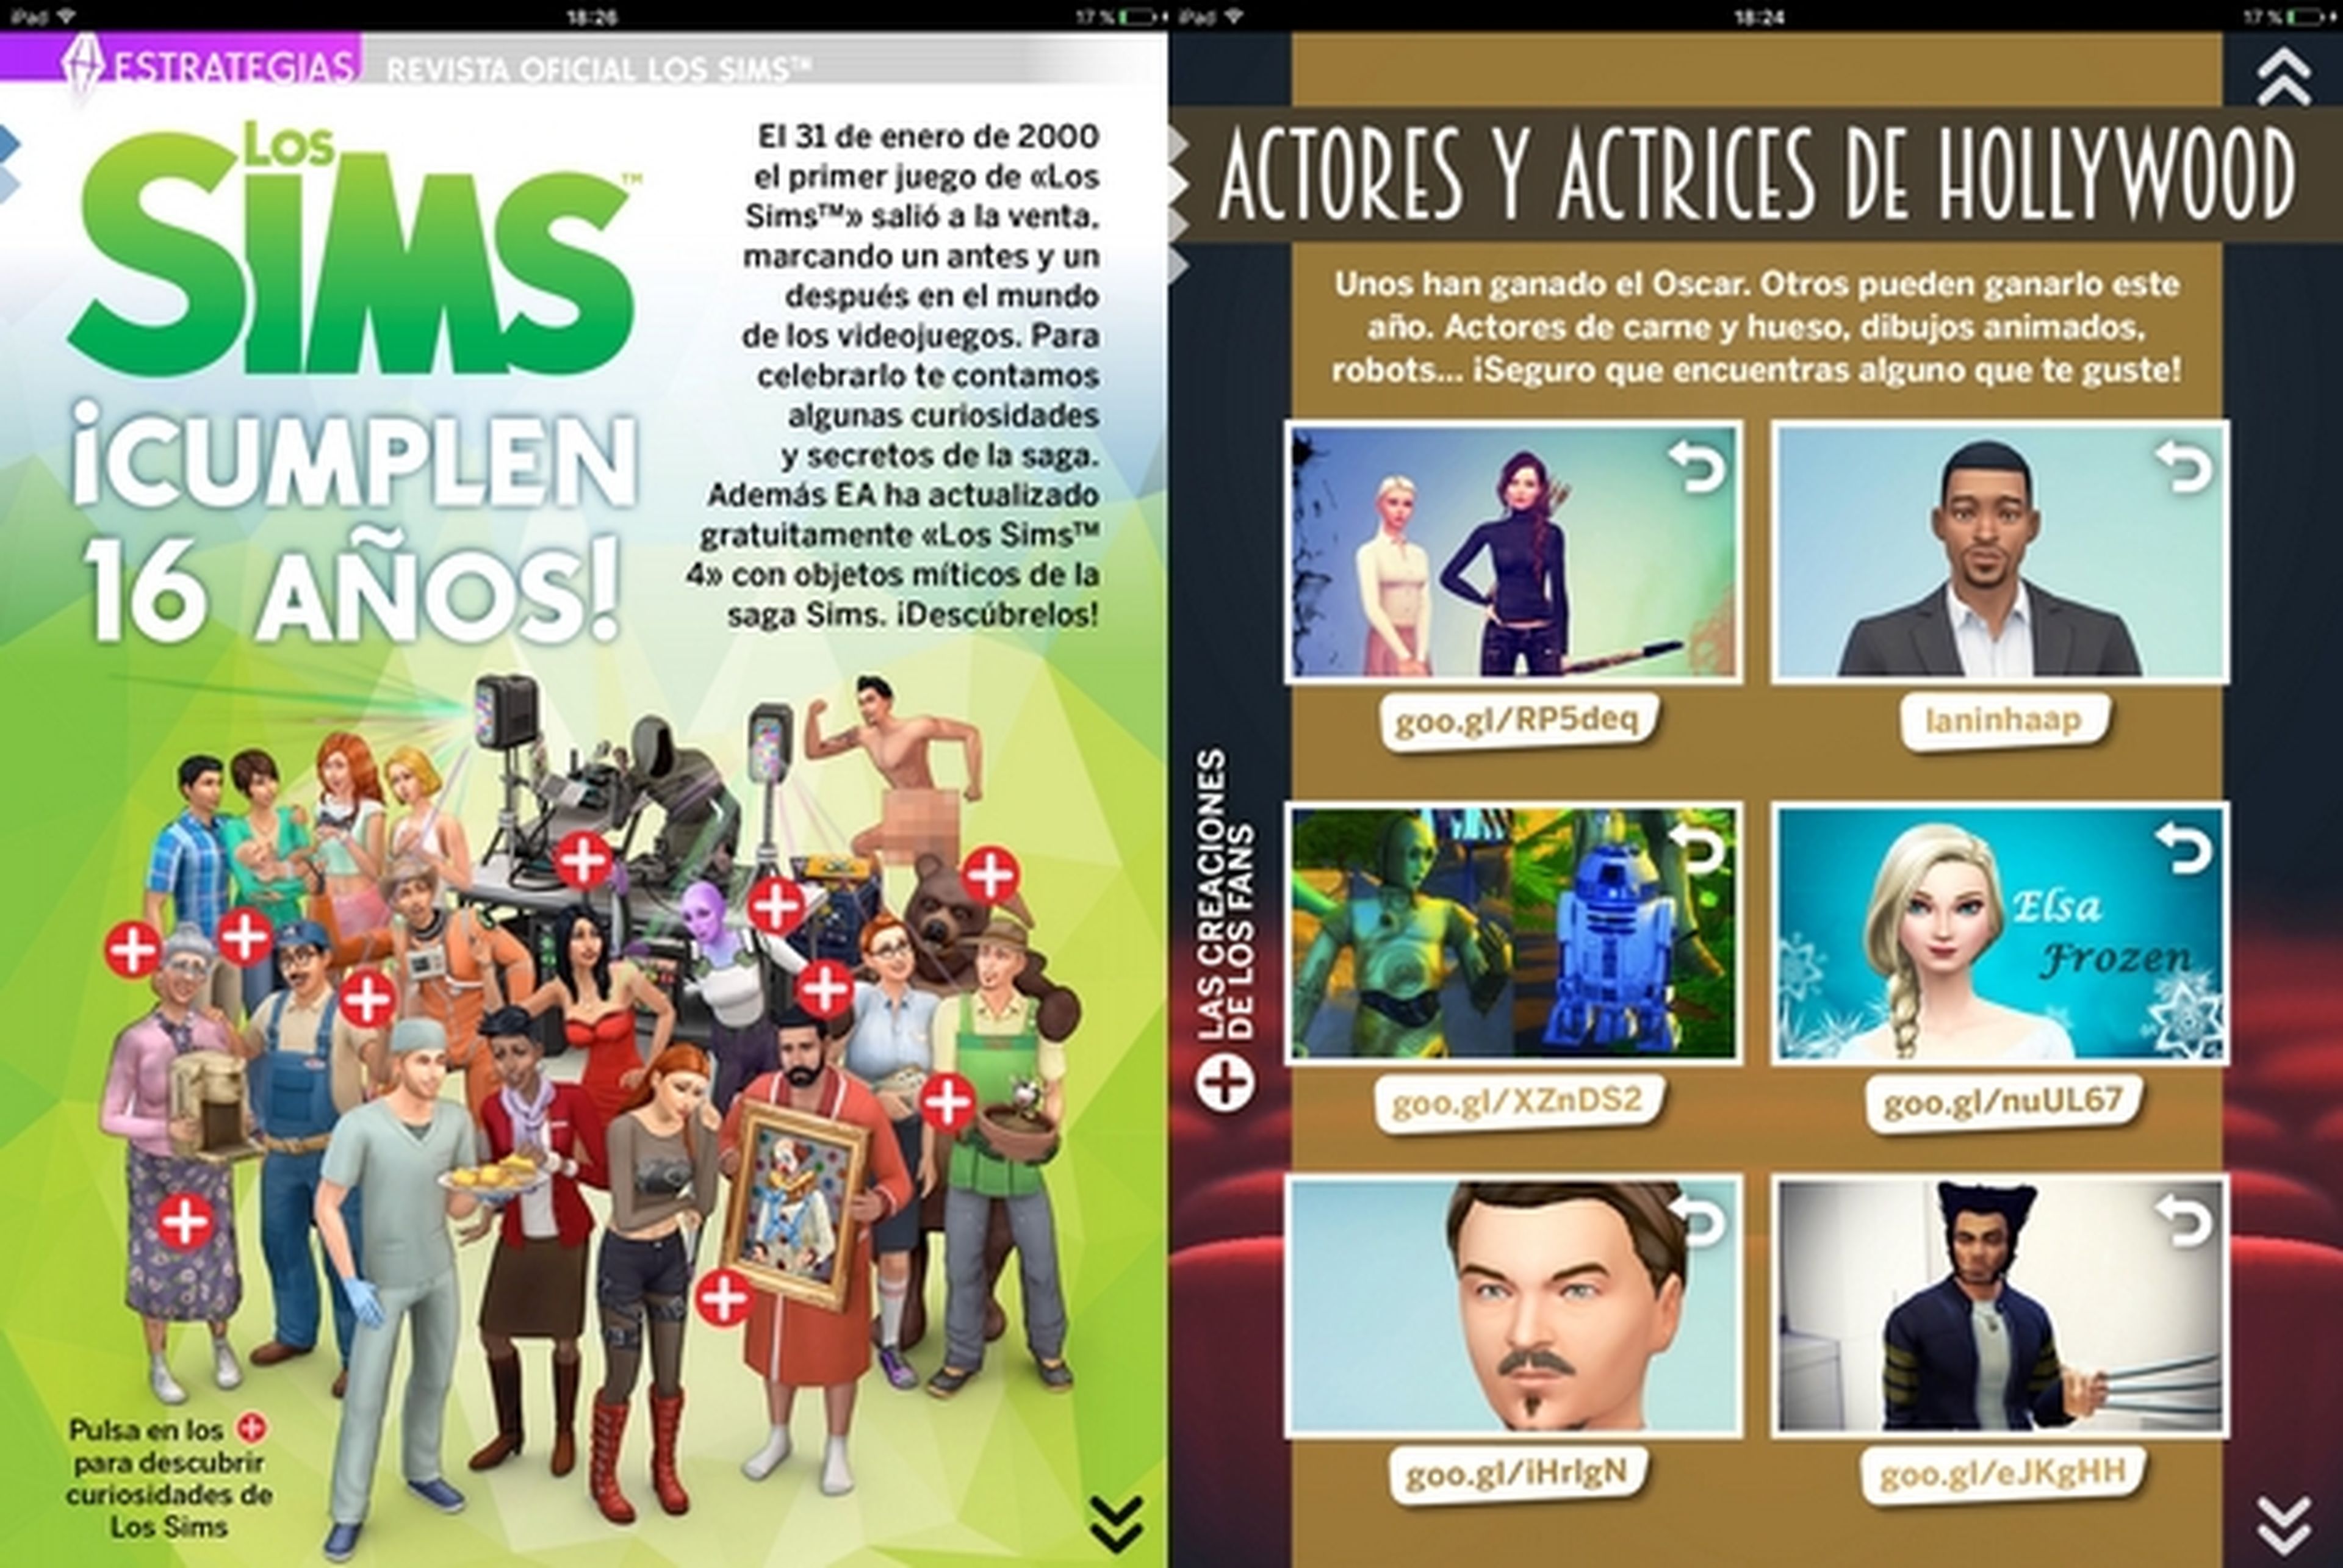 Los Sims cumplen 16 años en la Revista Oficial de los Sims número 23